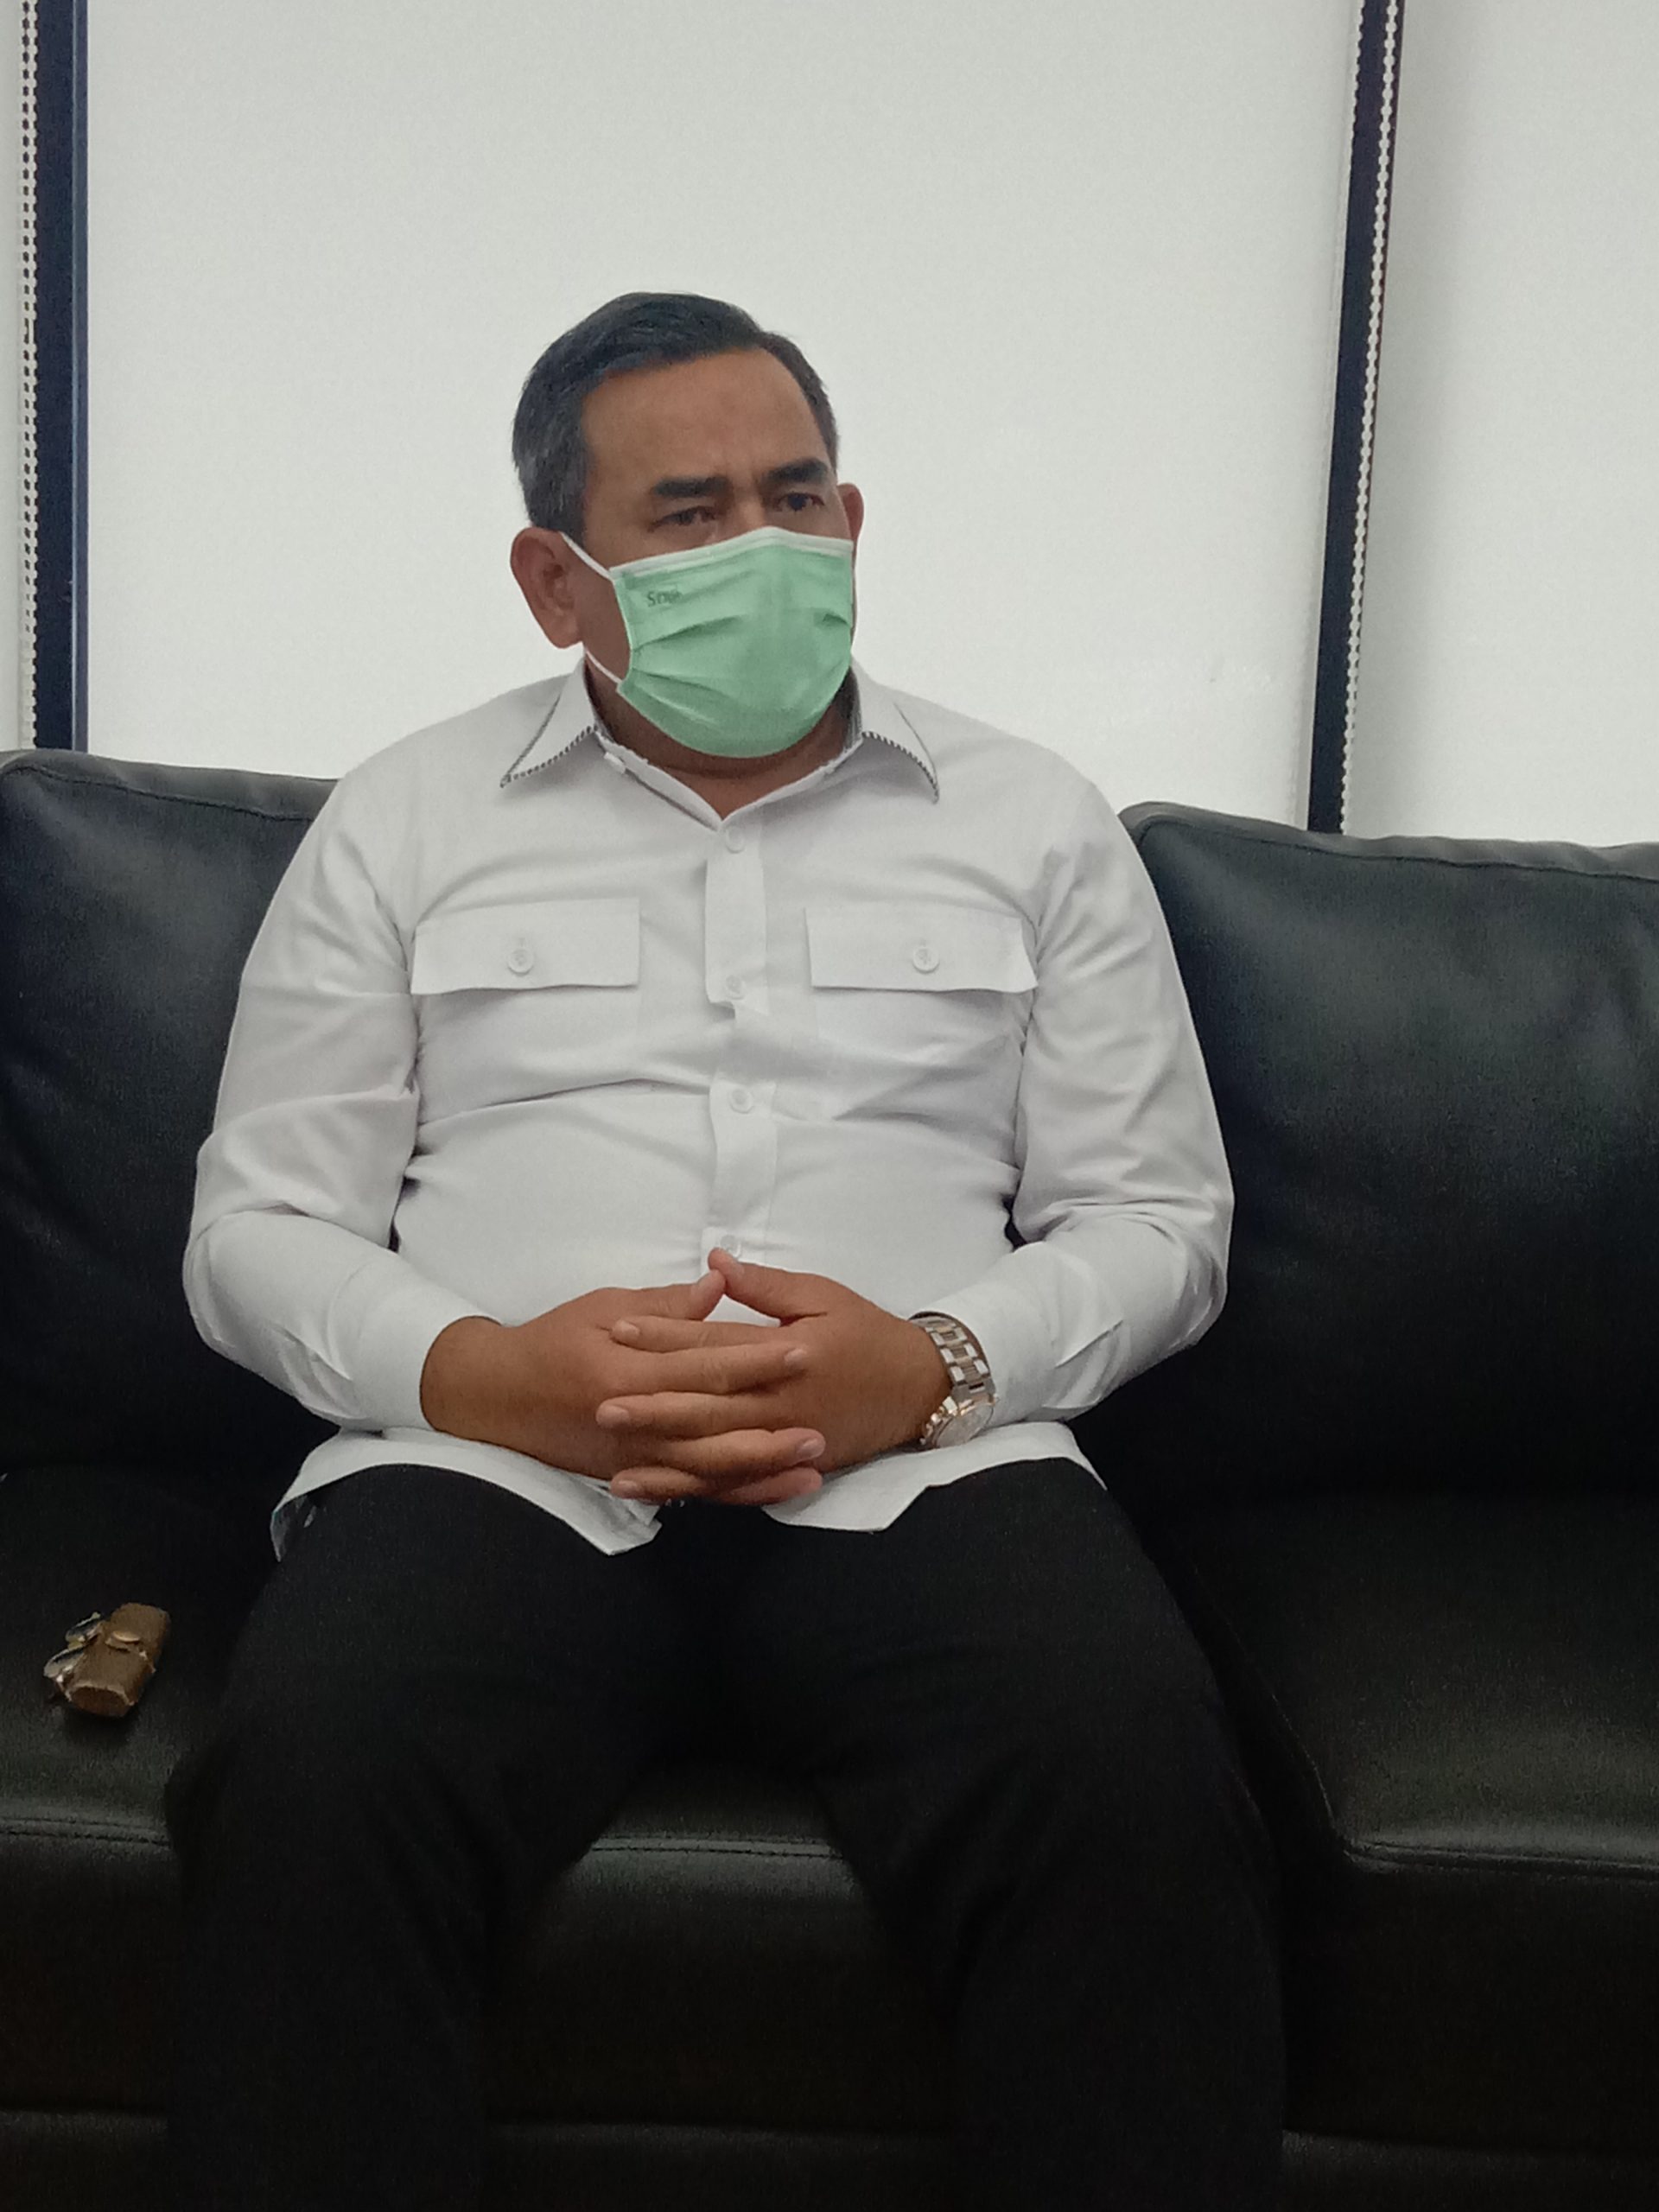 Kanwil Kemenkumham Jakarta Perketat Pengawasan, Taufiqurahman: Tidak Ada Pembiaran Masuk Lapas Rutan